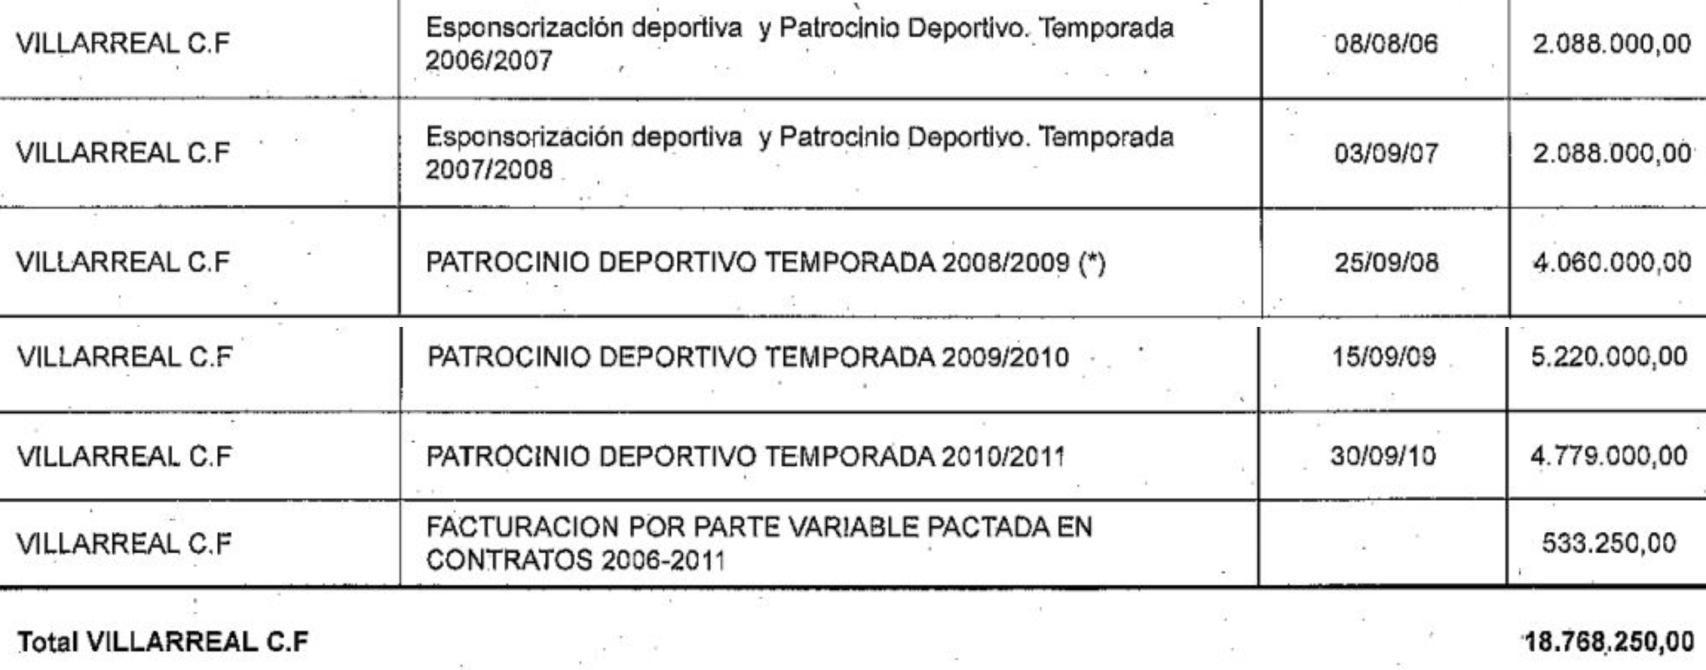 Relación oficial de patrocinios de Aeropuerto de Castellón SL al Villarreal CF hasta 2011. EE